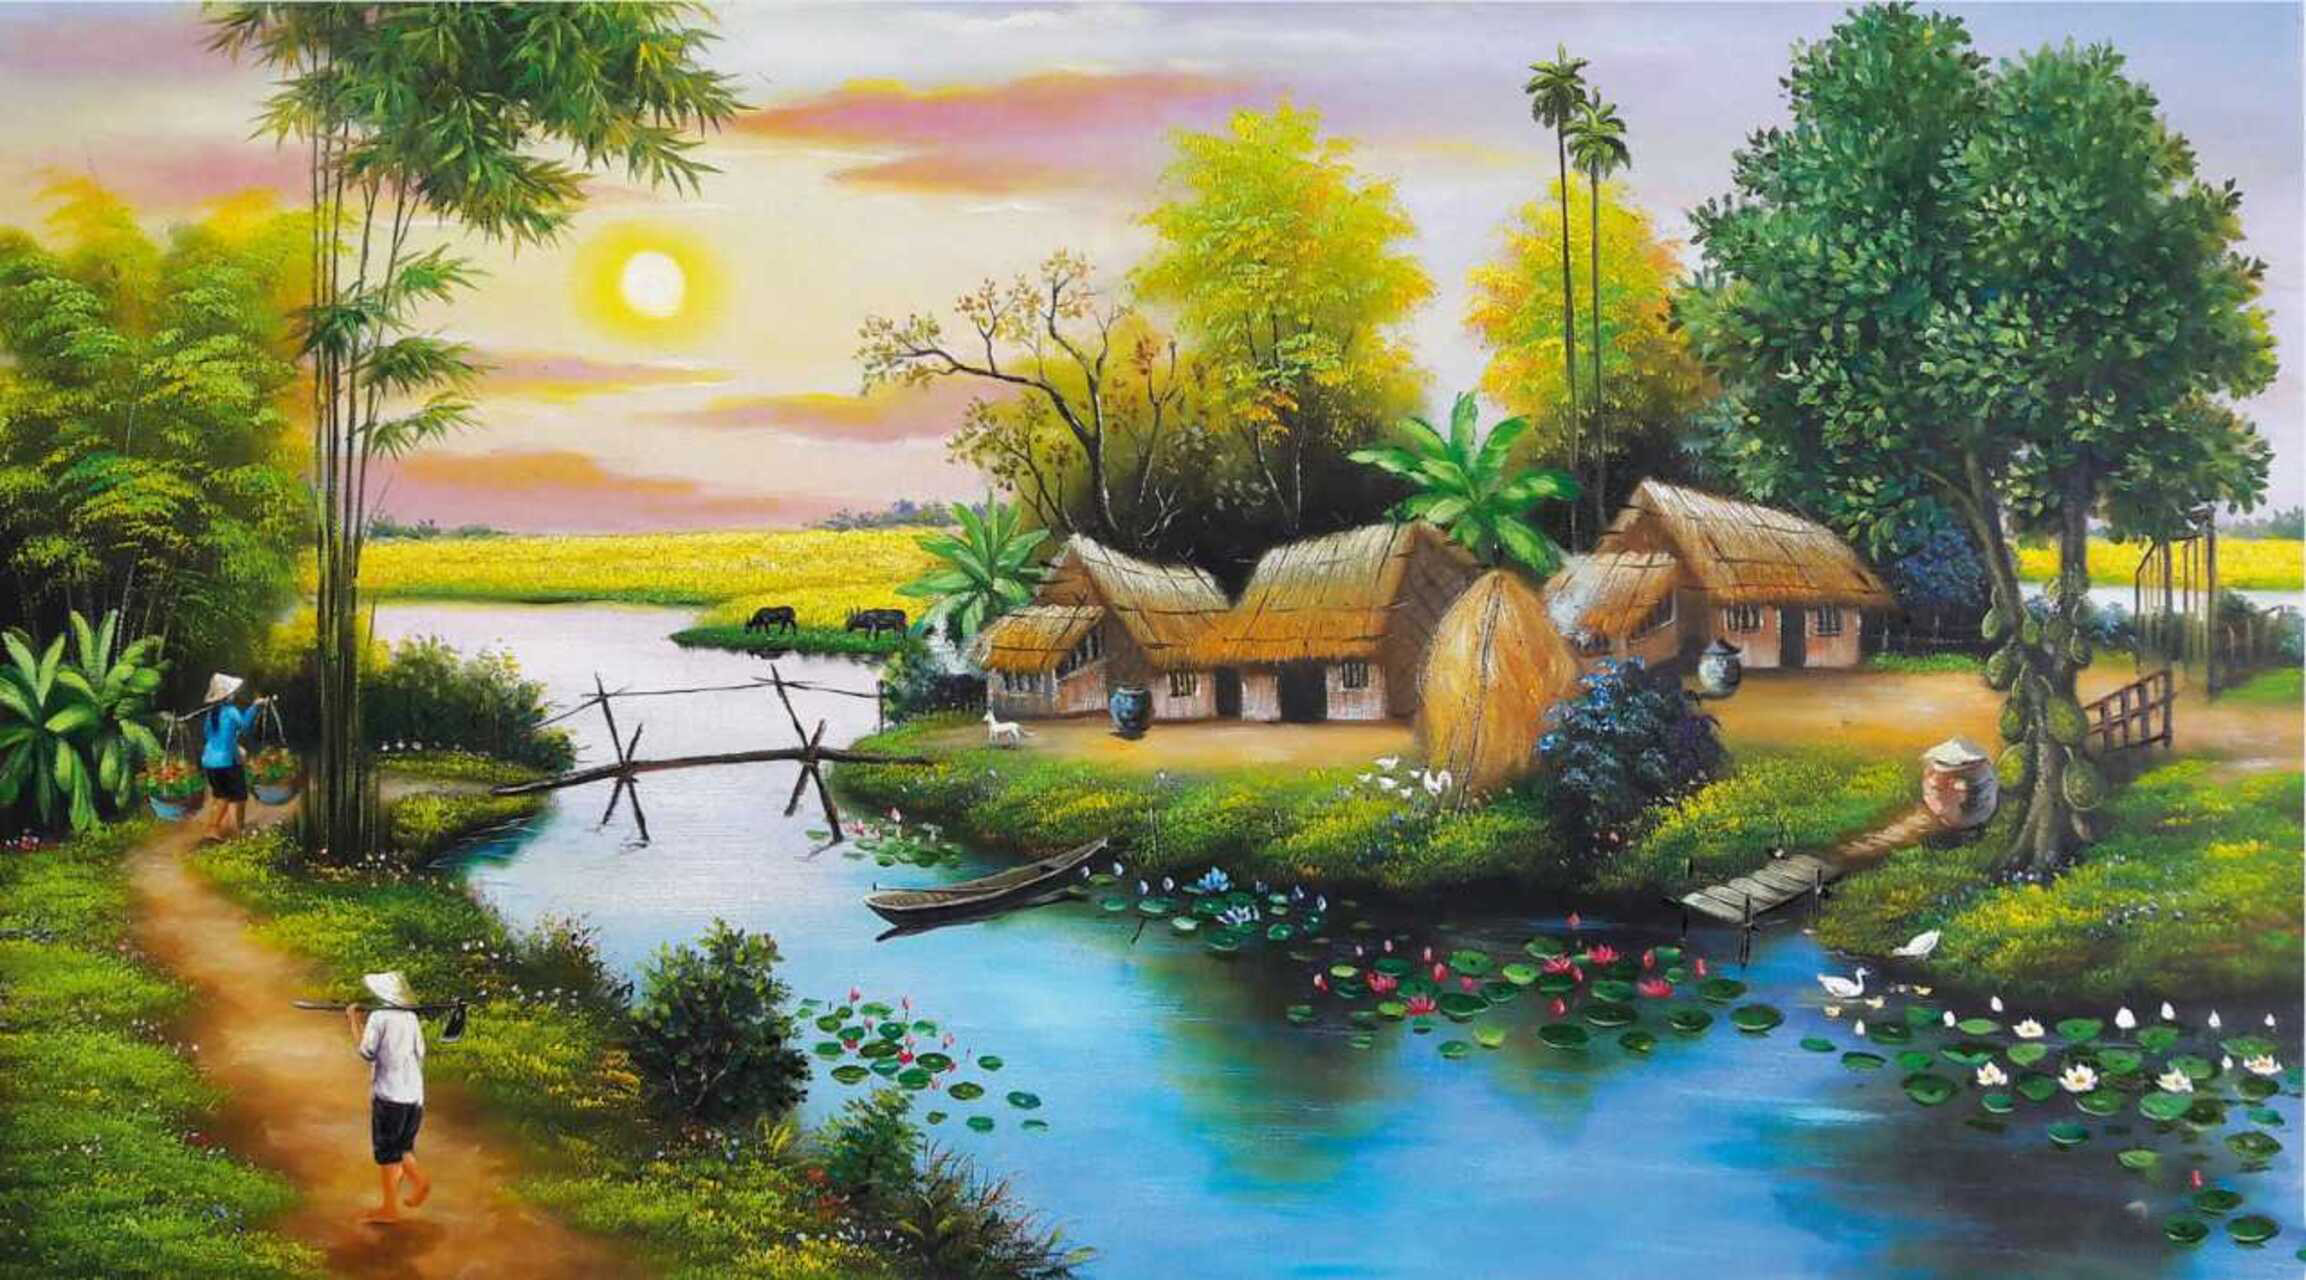 Mẫu tranh phong cảnh đồng quê mùa thu hoạch lúa vẽ sơn dầu Amia 227